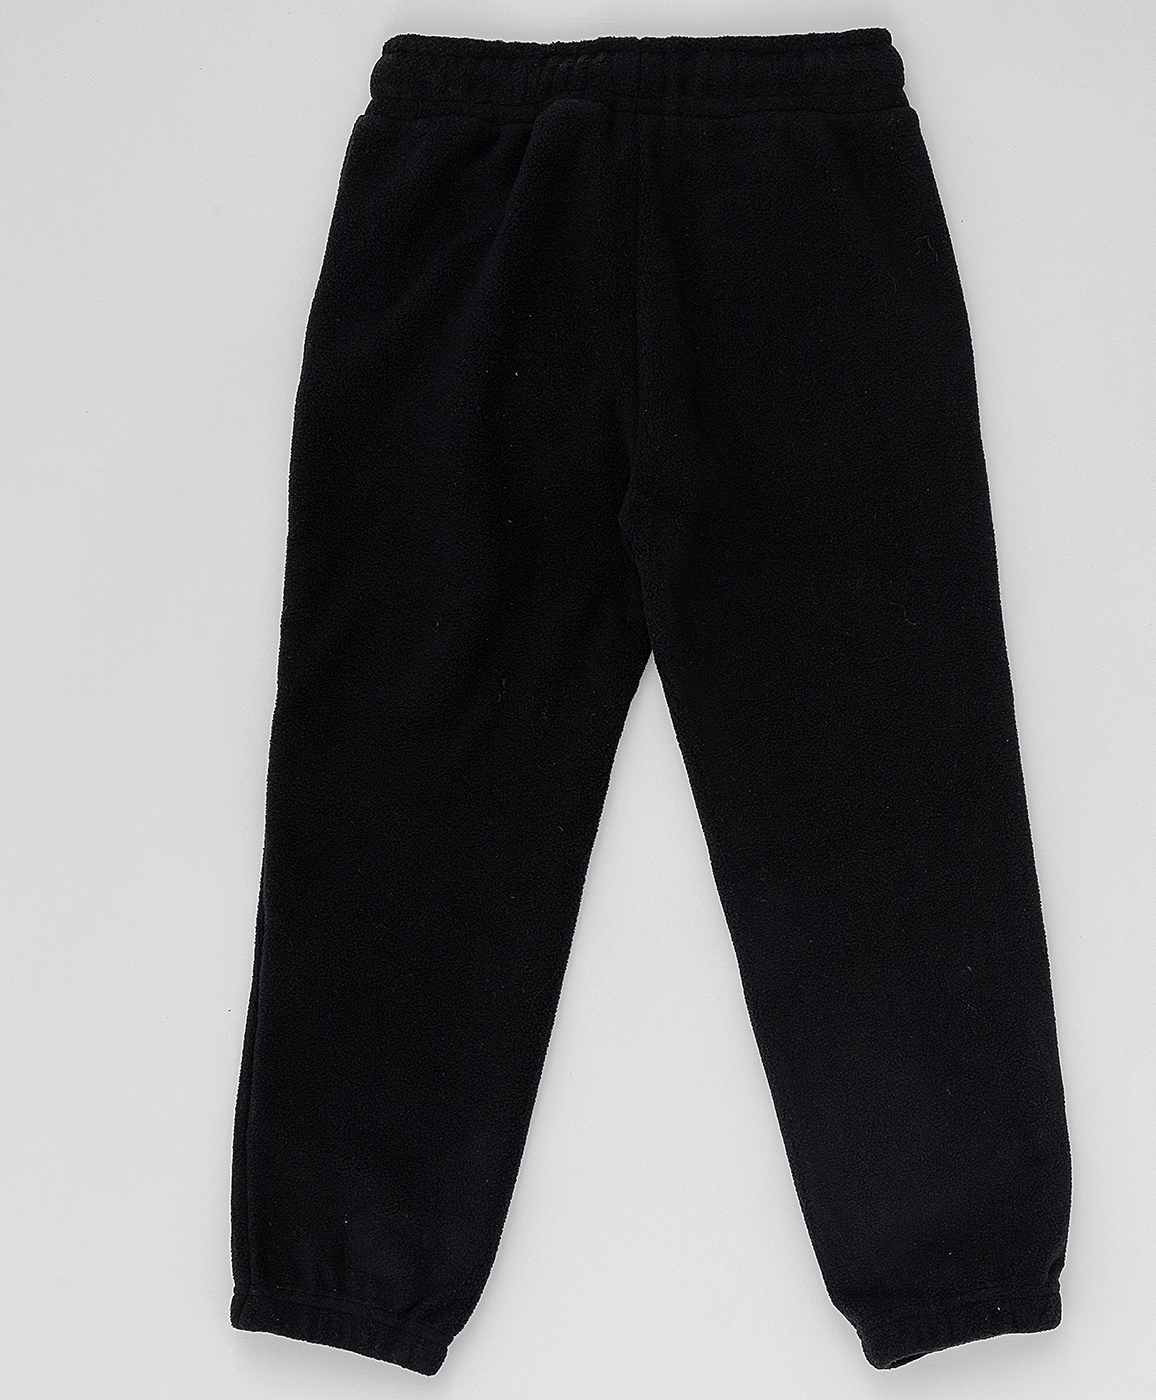 Черные флисовые брюки Button Blue 220BBBA56010800, размер 140, цвет черный на резинке - фото 2